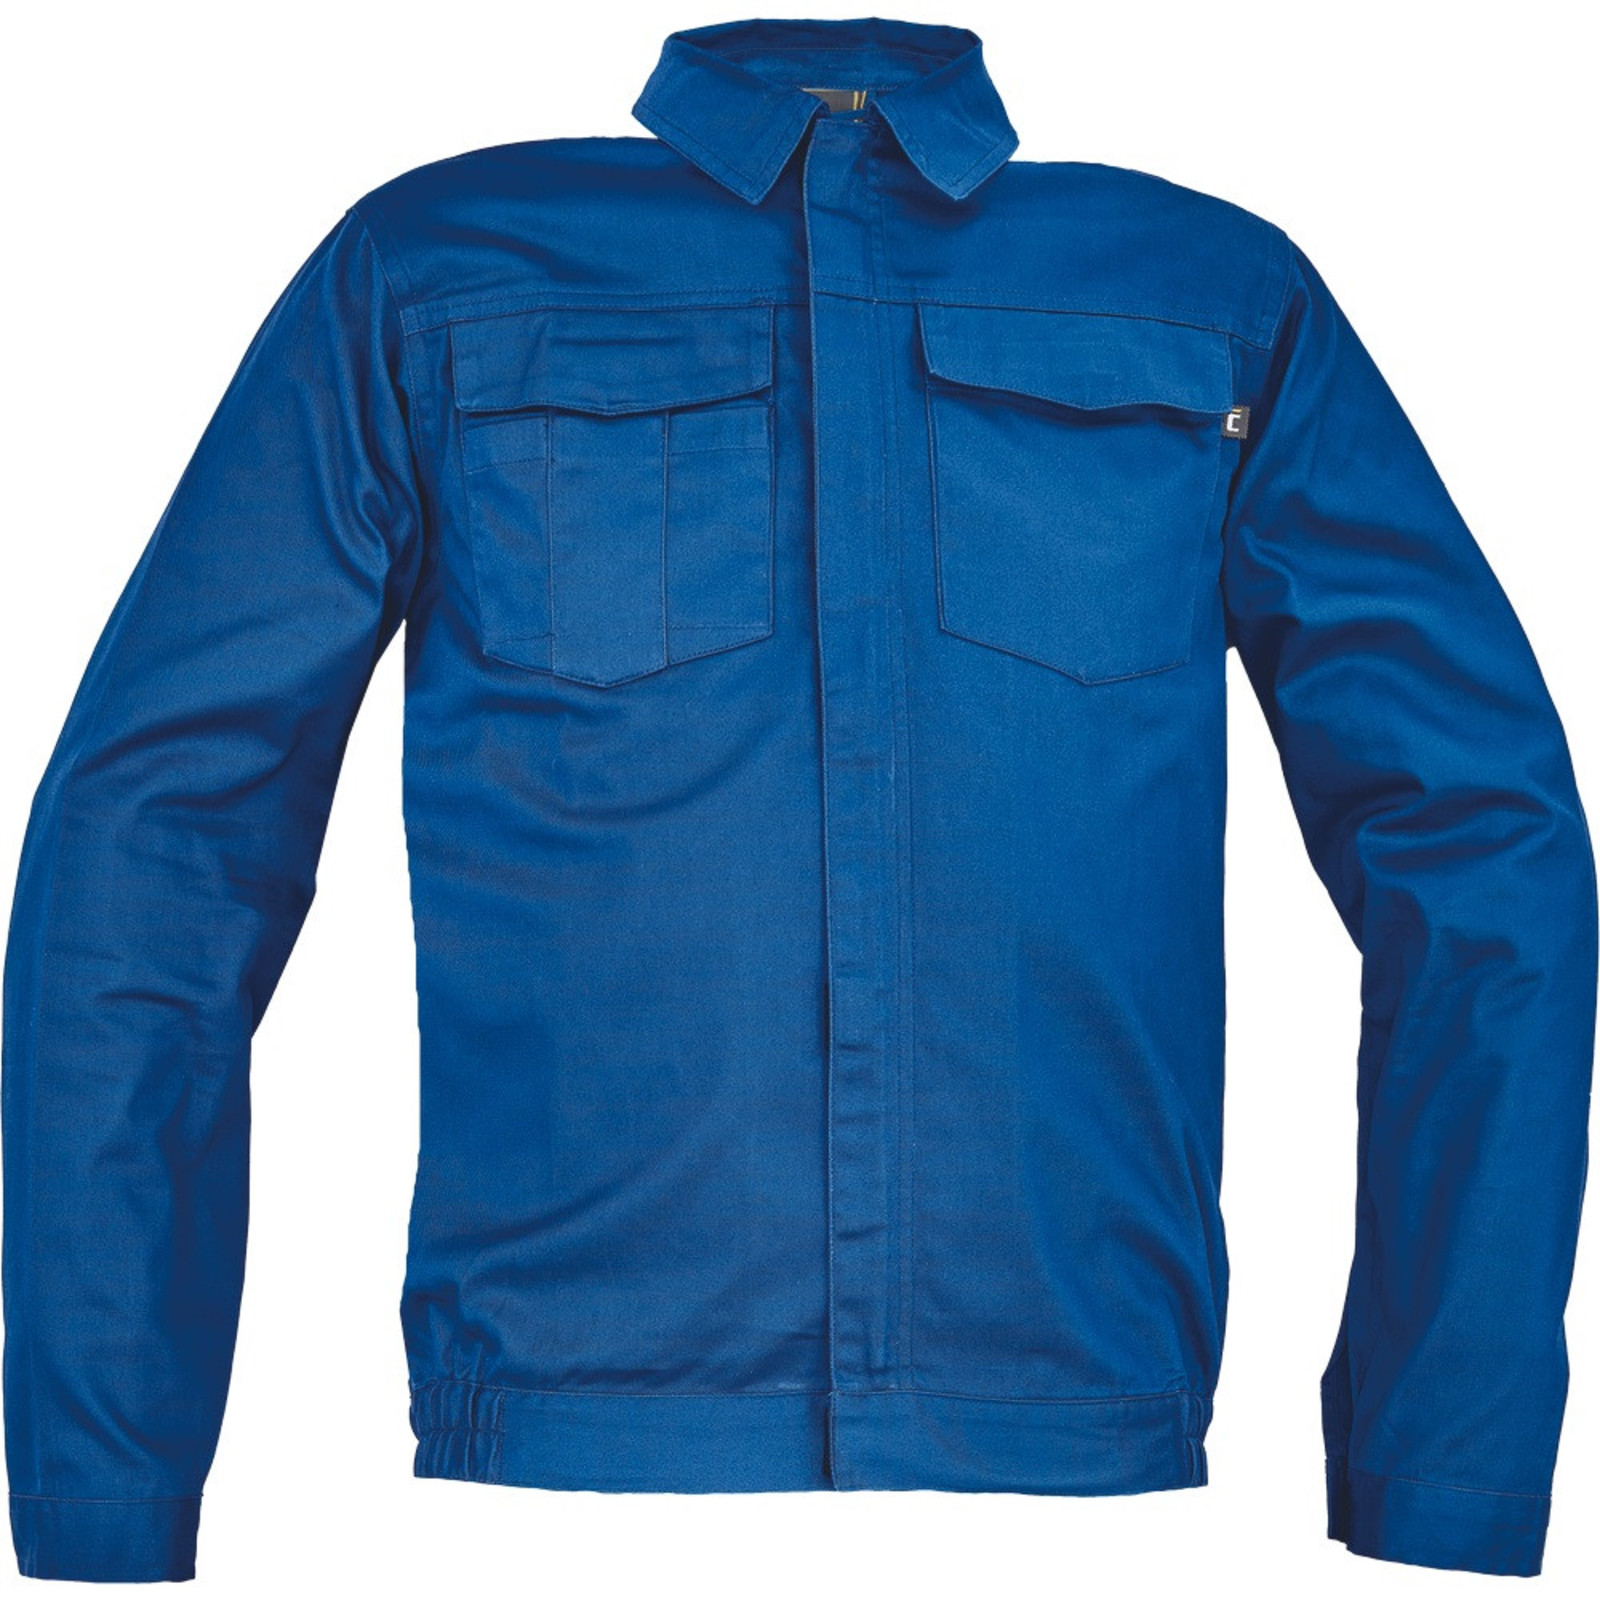 Pánska ľahká pracovná bunda Cerva Ciudades Basic Zaragoza - veľkosť: 52, farba: royal blue